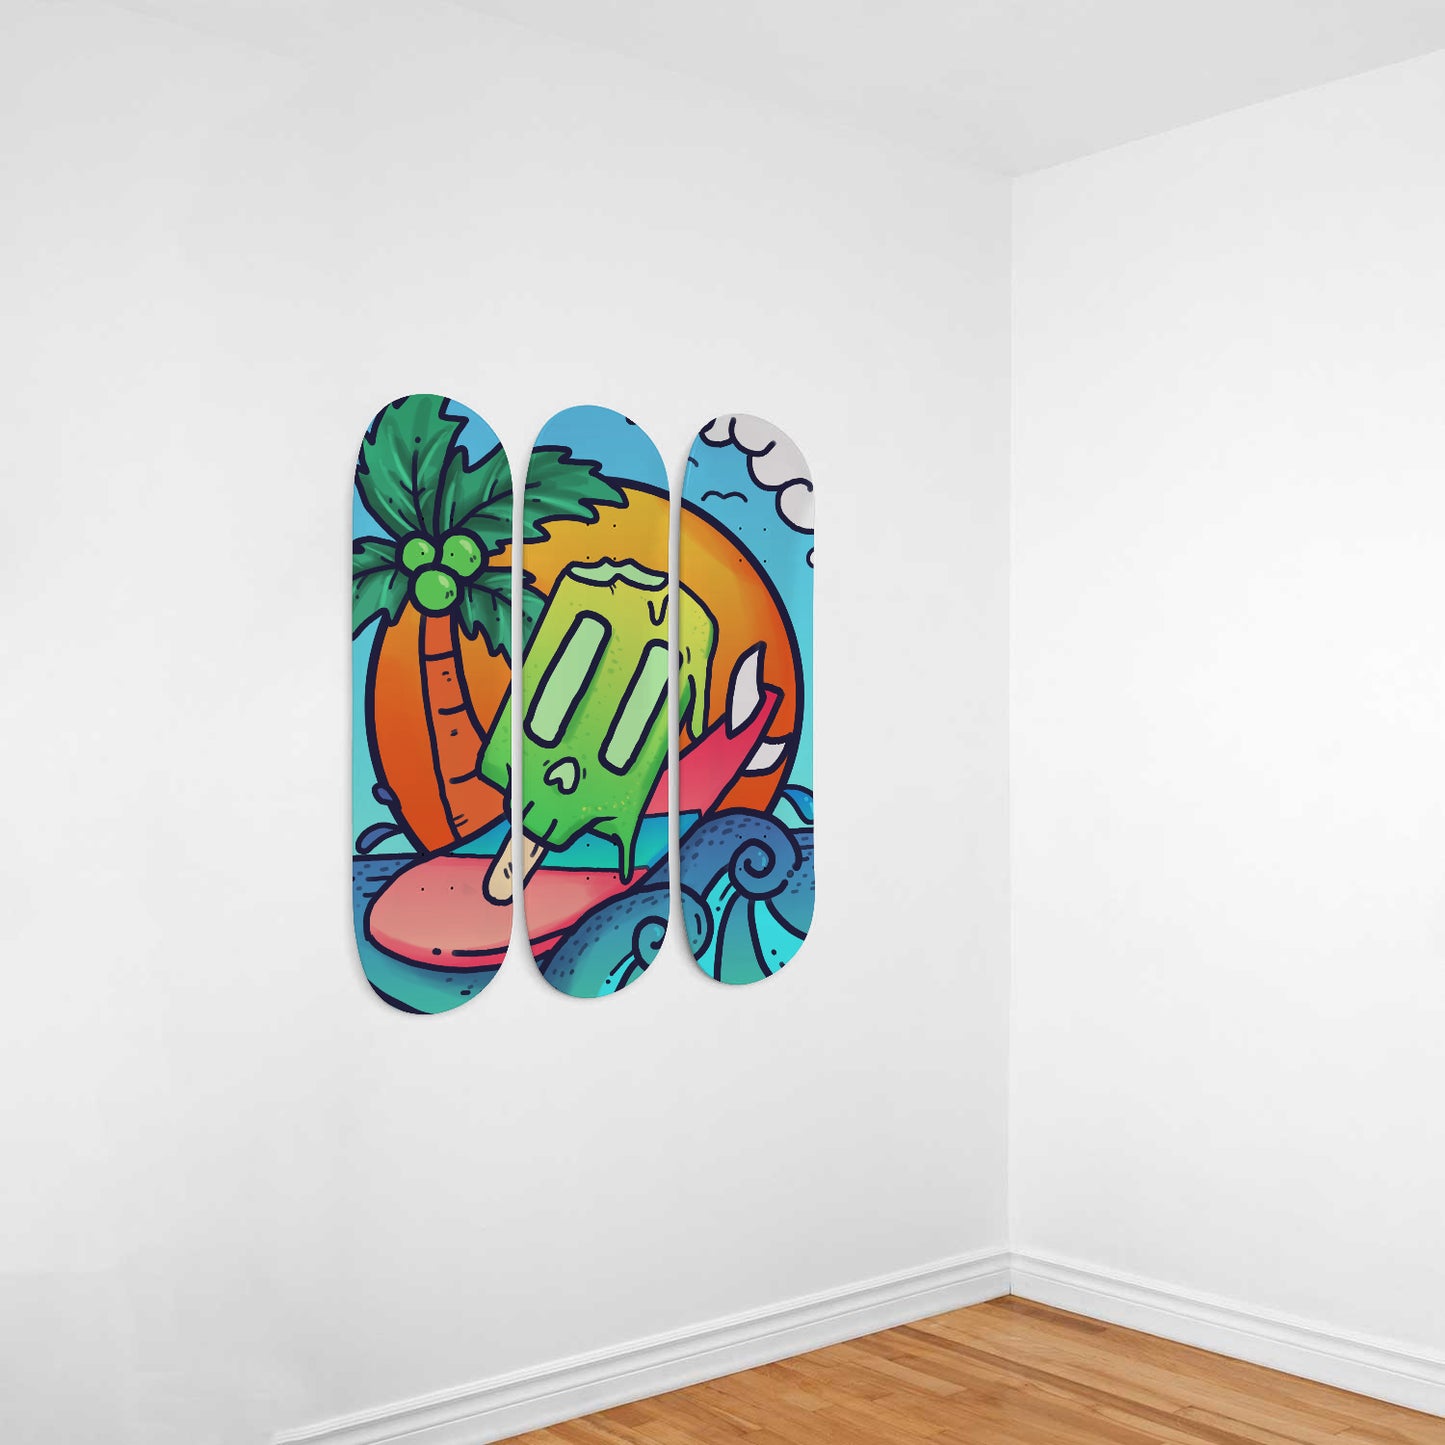 Chill Summer - Vibrant Doodles Wall Art | 3 Piece Skateboard Wall Art, Deck Art | Wall Hanging Decor | Custom Printed Wall Art